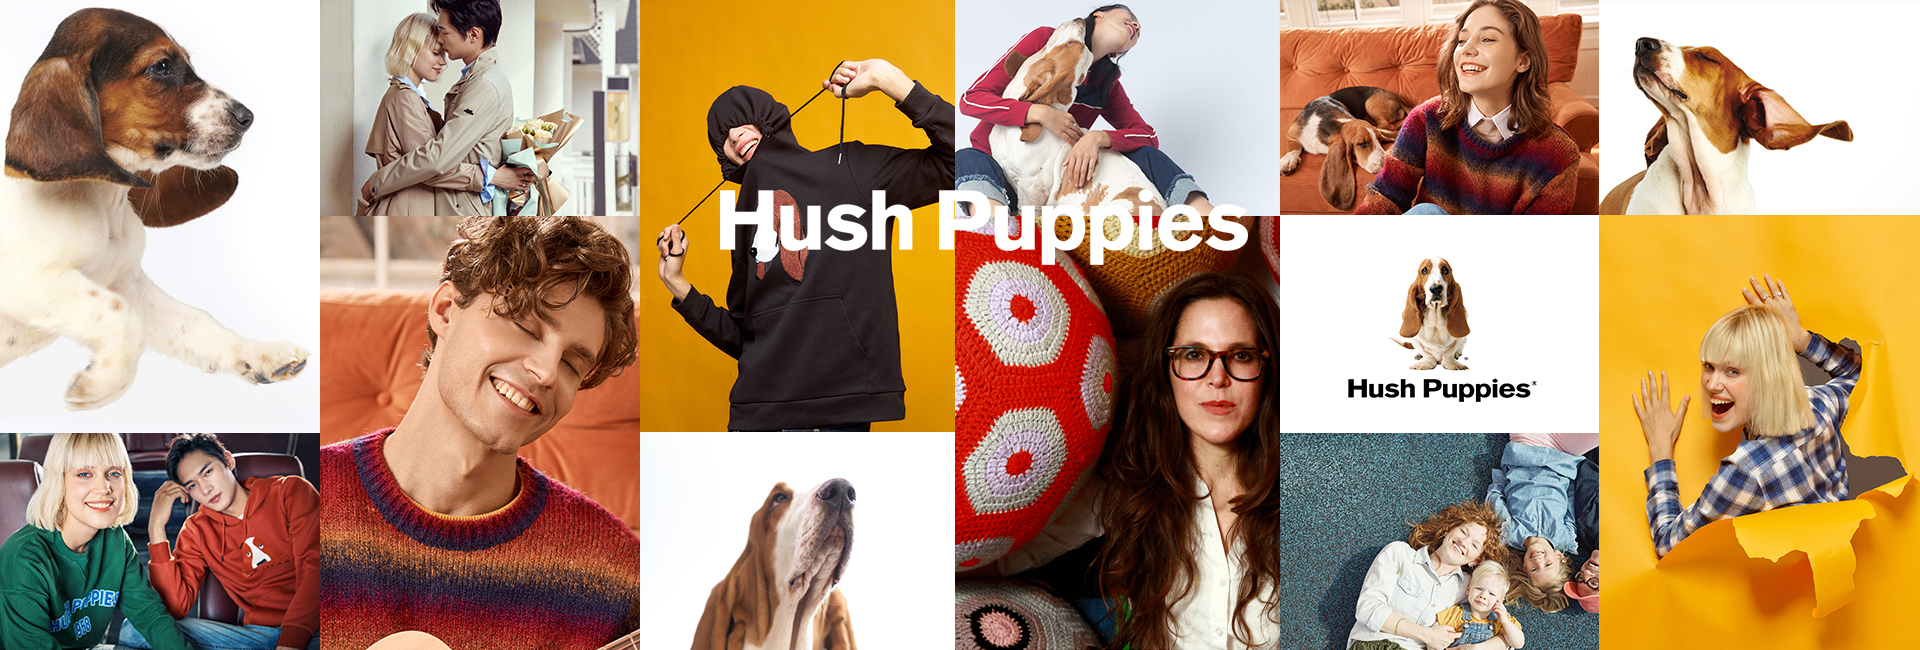 嘉曼服饰拟以5880万美元收购美国Hush Puppies品牌中国大陆全品类IP资产